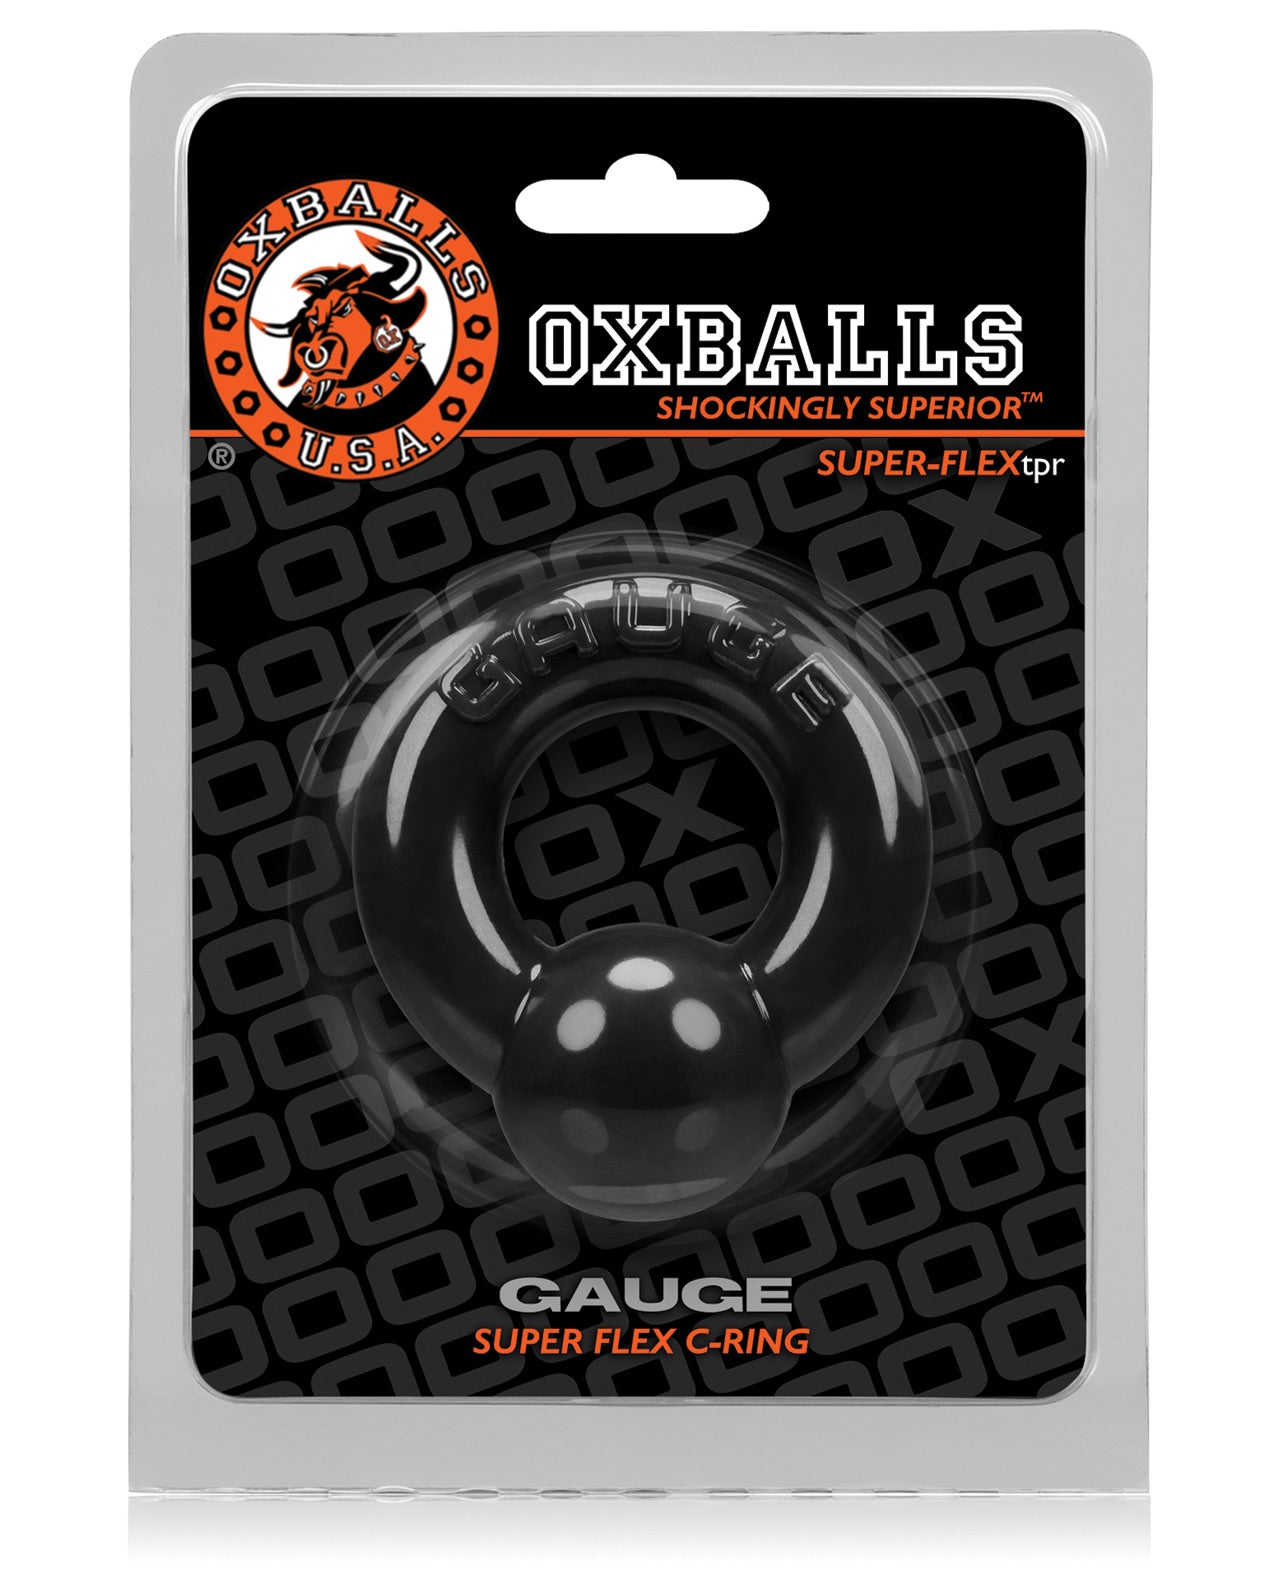 Oxballs Gauge Cockring - Black - LUST Depot